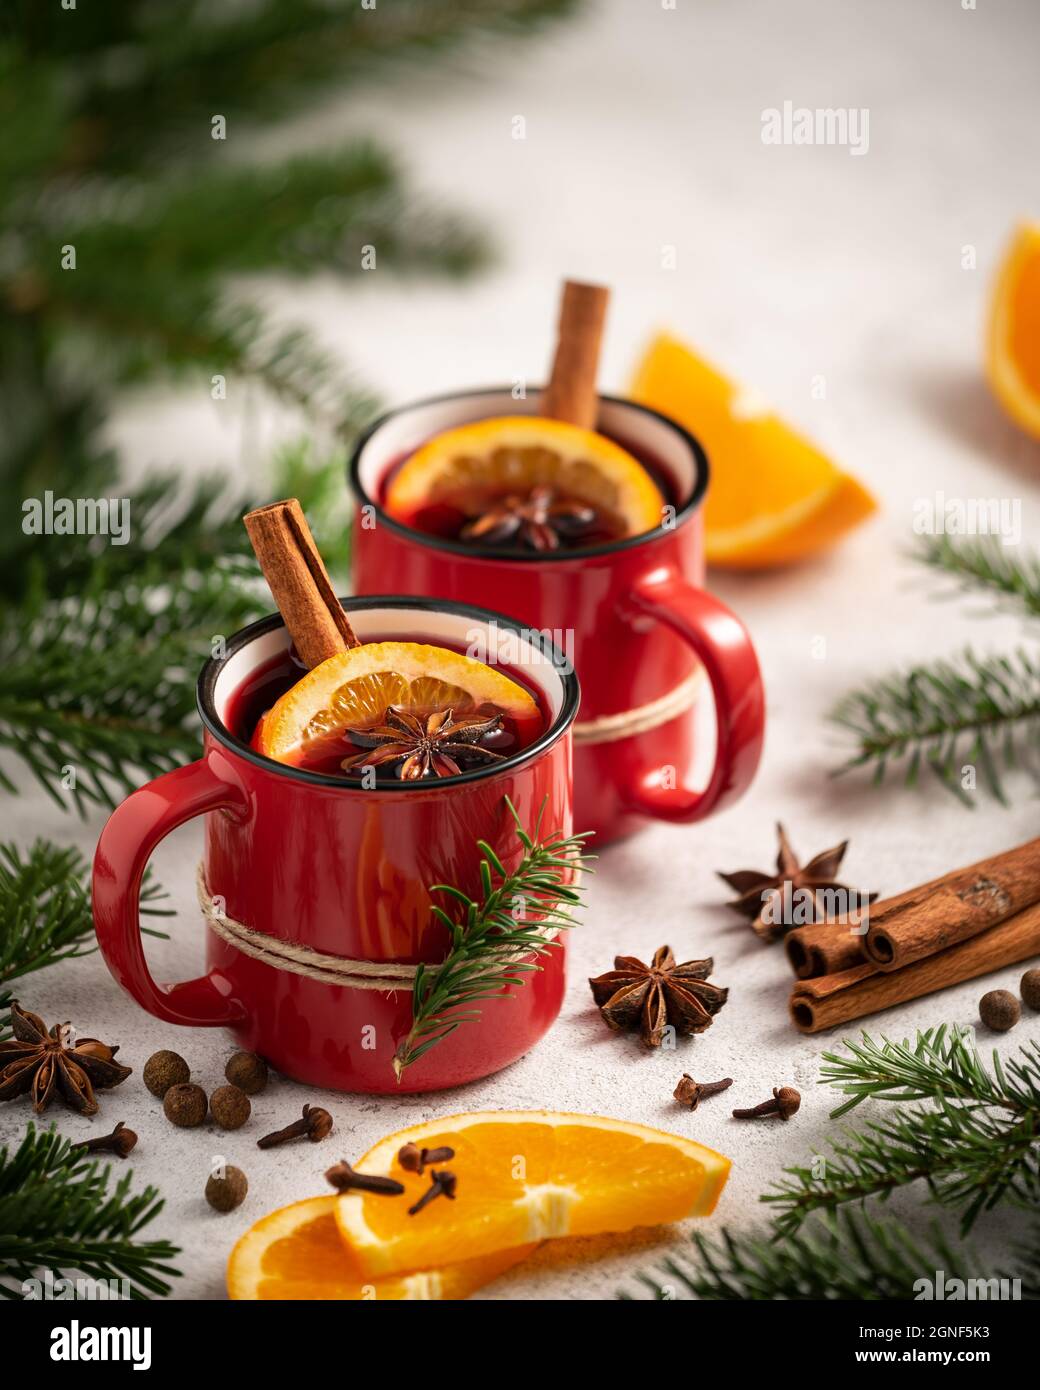 Carte de Noël avec vin chaud, épices et oranges entourées de branches de sapin Banque D'Images